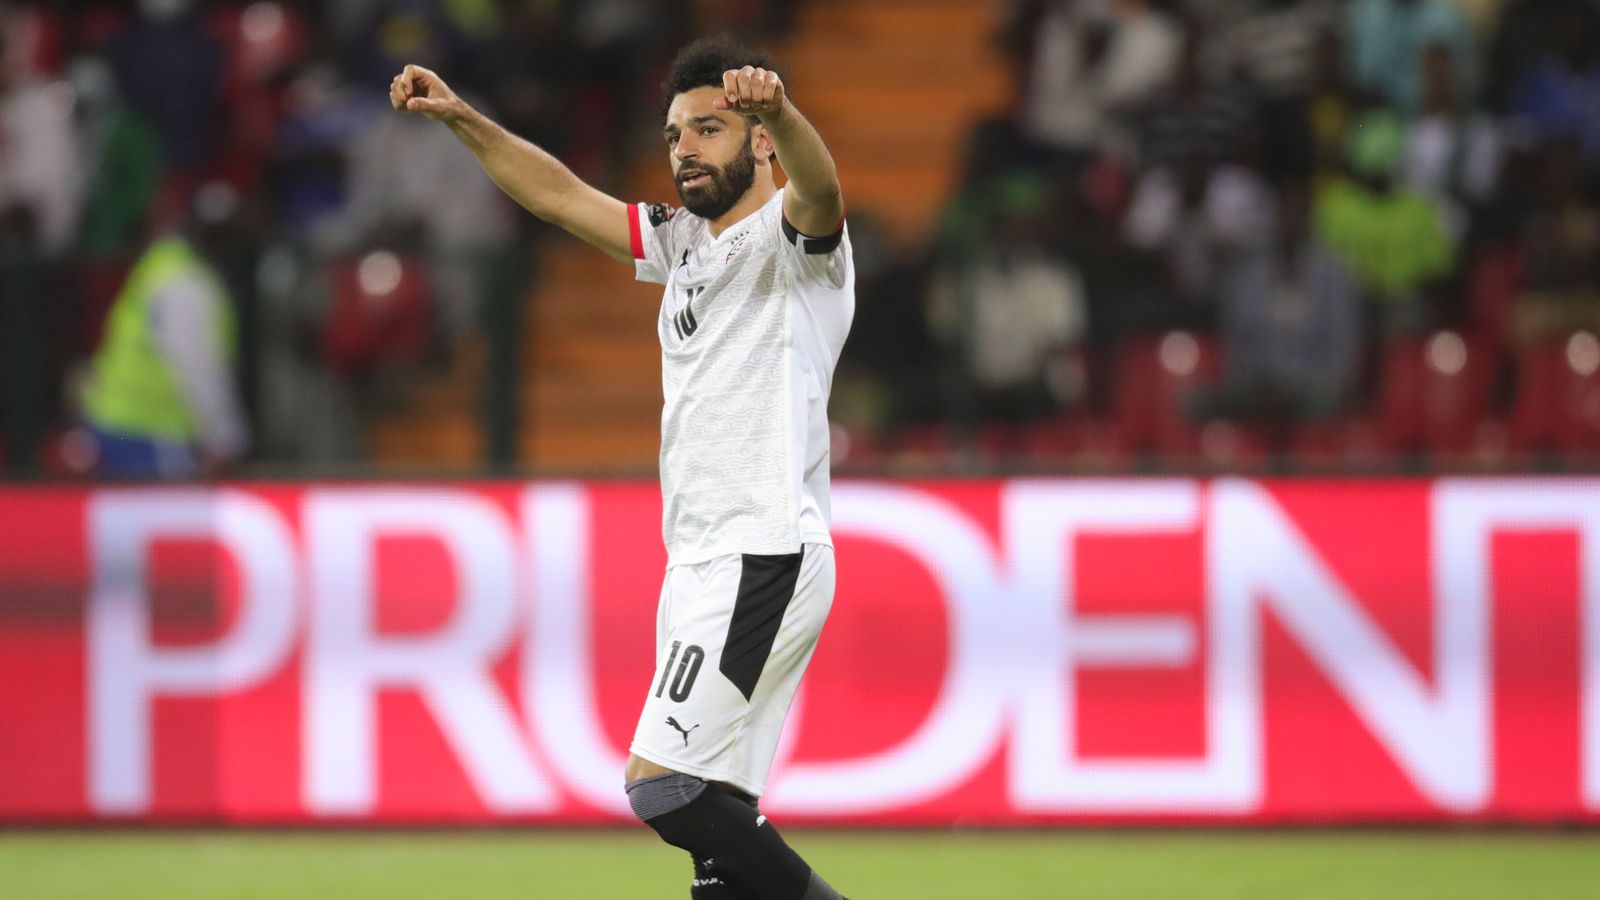 Égypte 1-0 Sénégal : Mohamed Salah bat Sadio Mane pour donner l’avantage à l’Égypte lors des éliminatoires de la Coupe du monde |  nouvelles du football